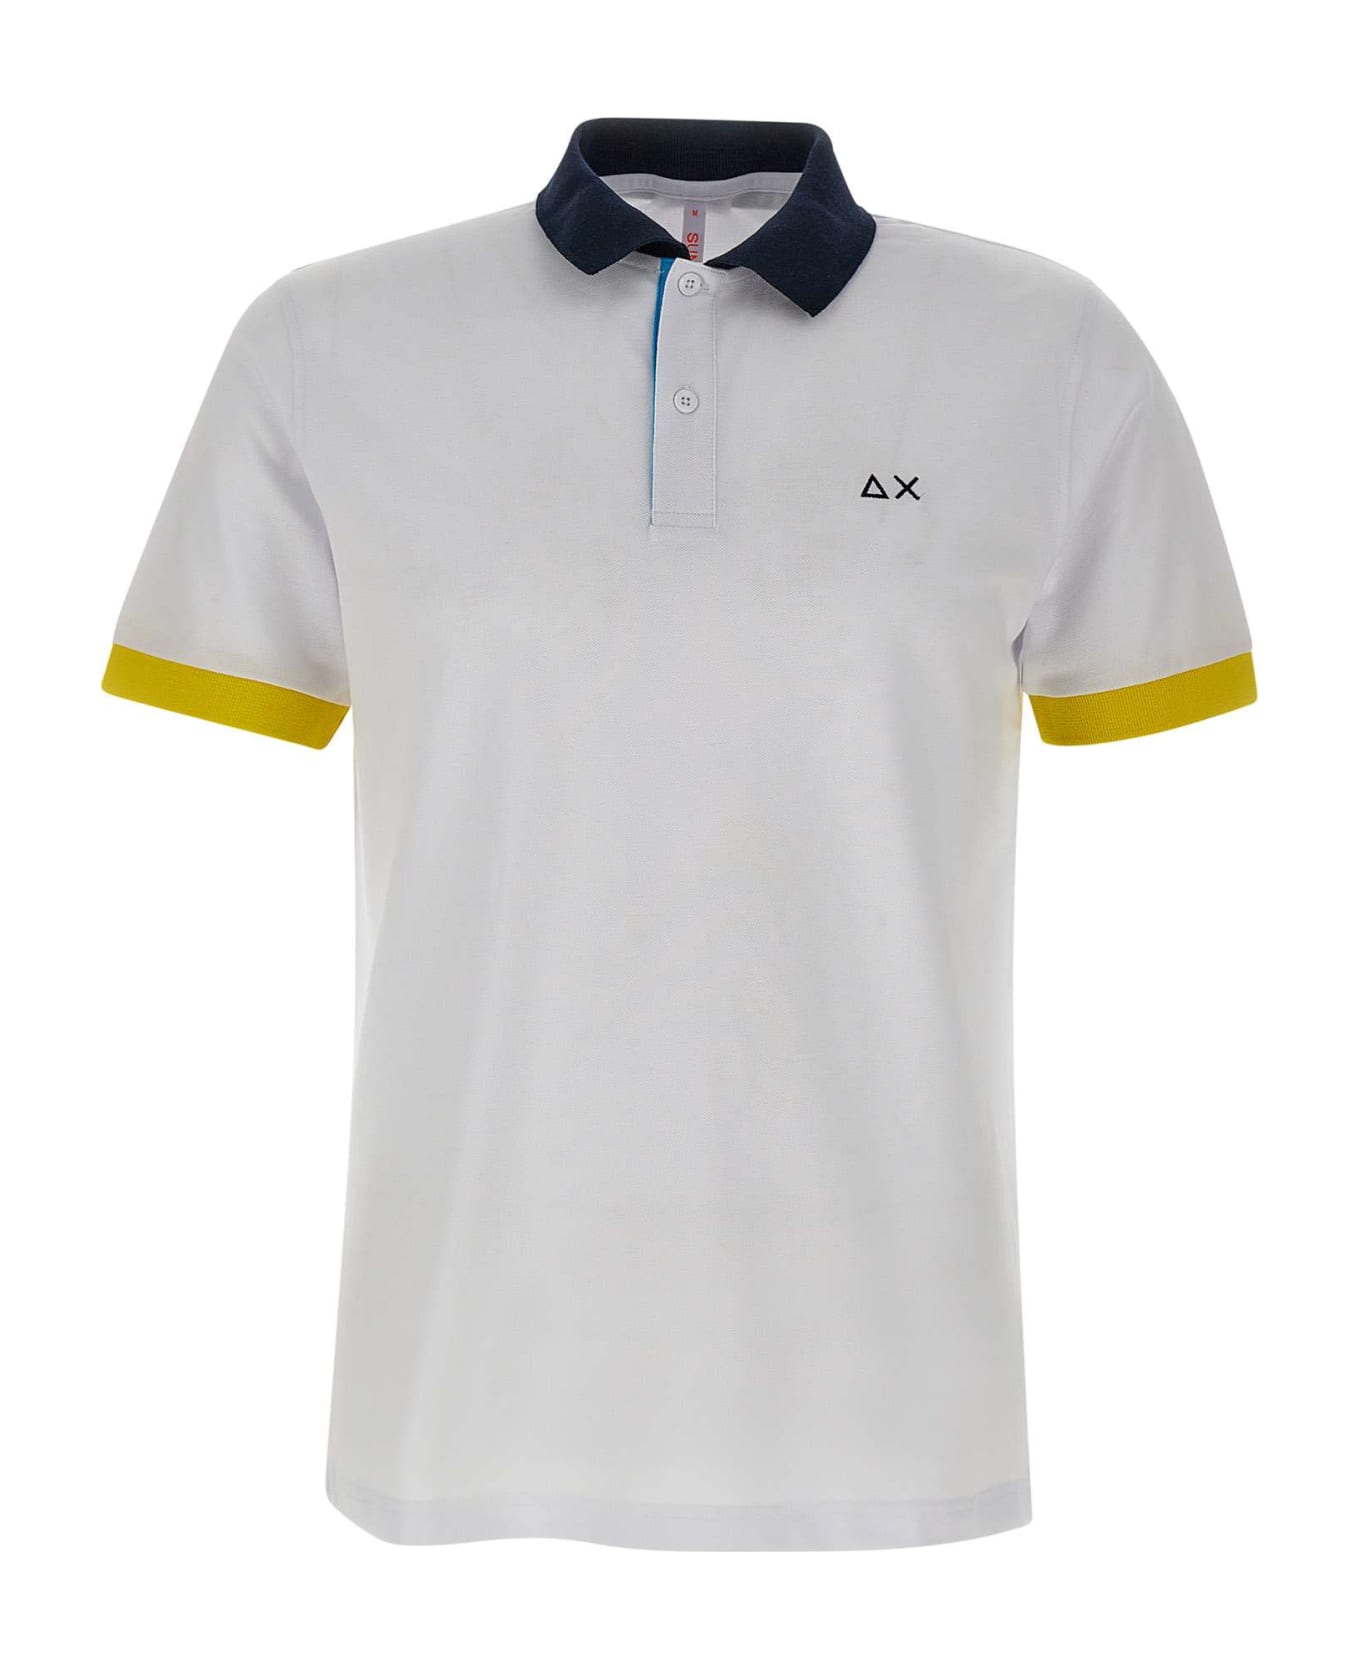 Sun 68 "3 Colours" Cotton Polo Shirt - WHITE